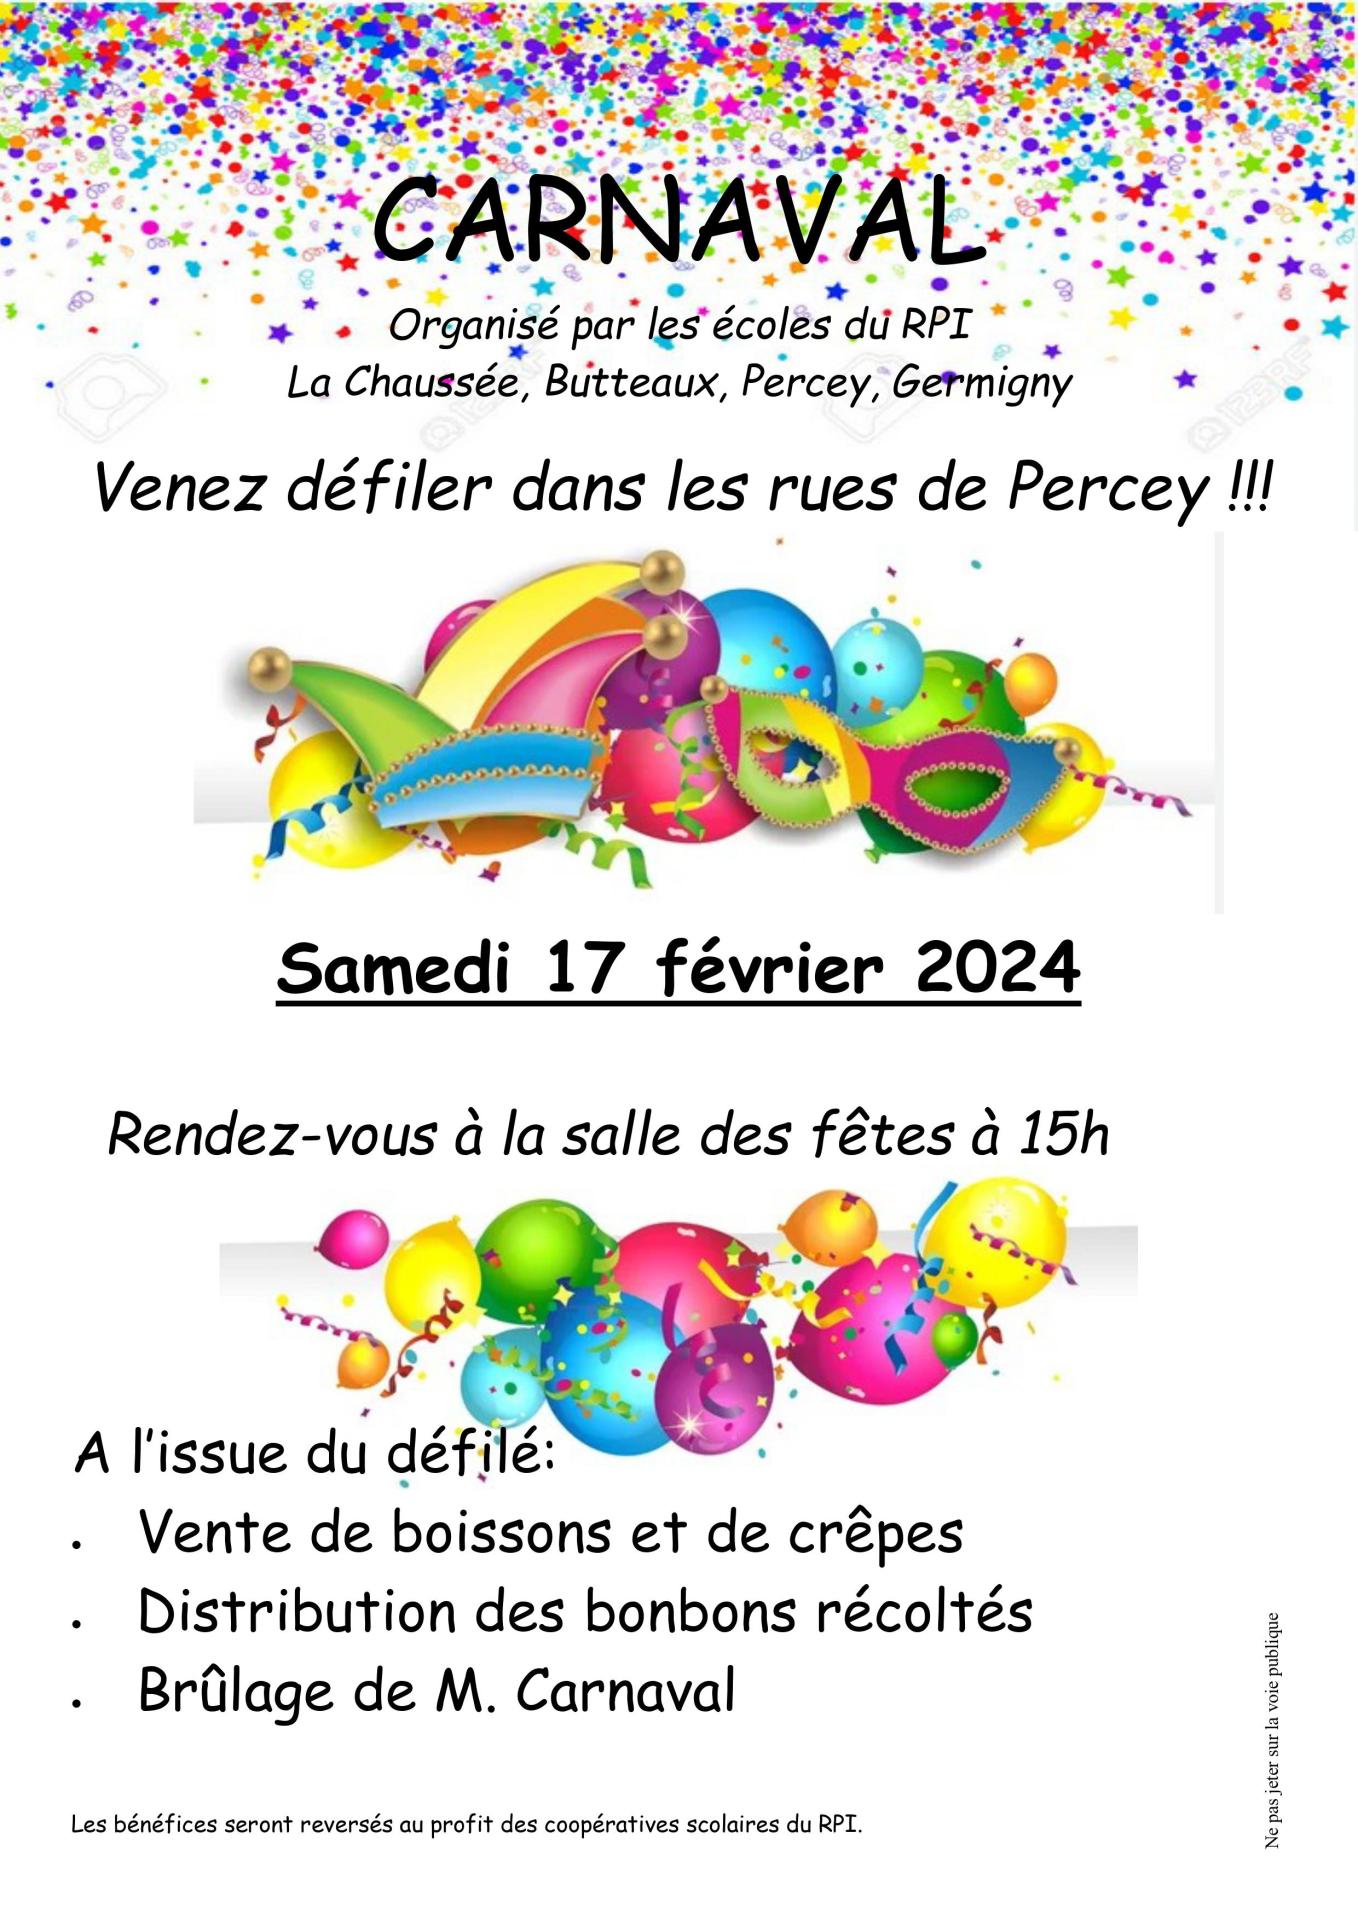 Carnaval du RPI samedi 17 février 2024 15h à Percey